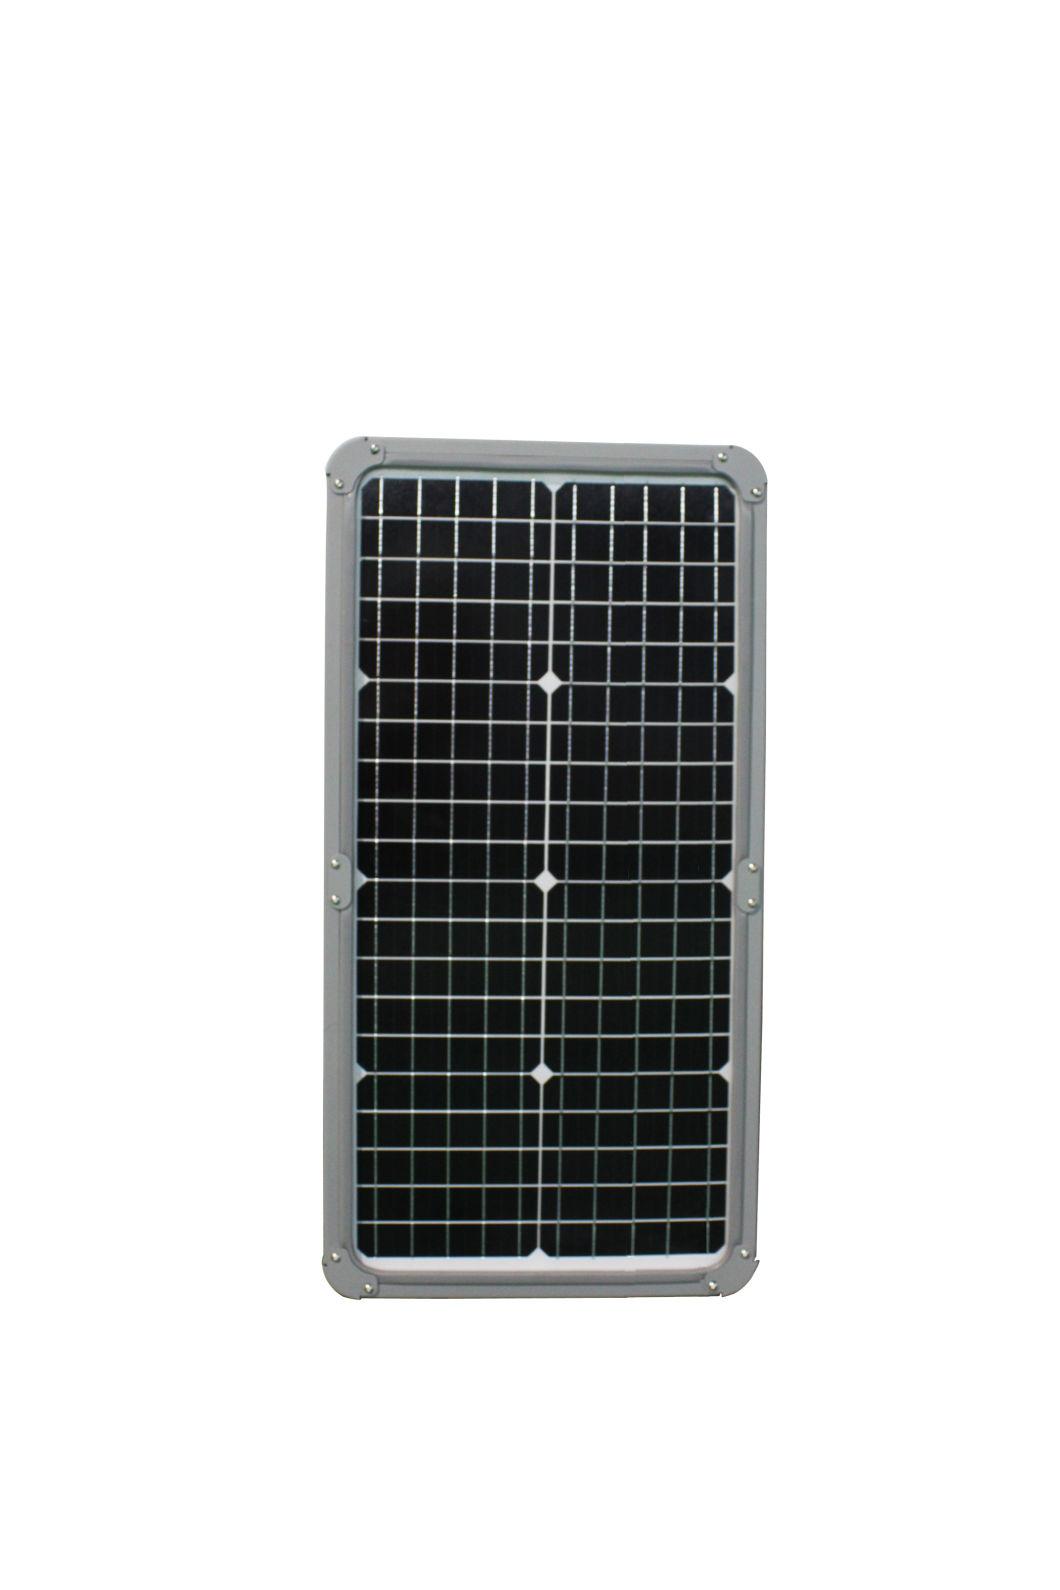 Aluminum All in One LED Solar Street Light Solar LED Light Outdoor Light 40W/50W/60W/80W/100W